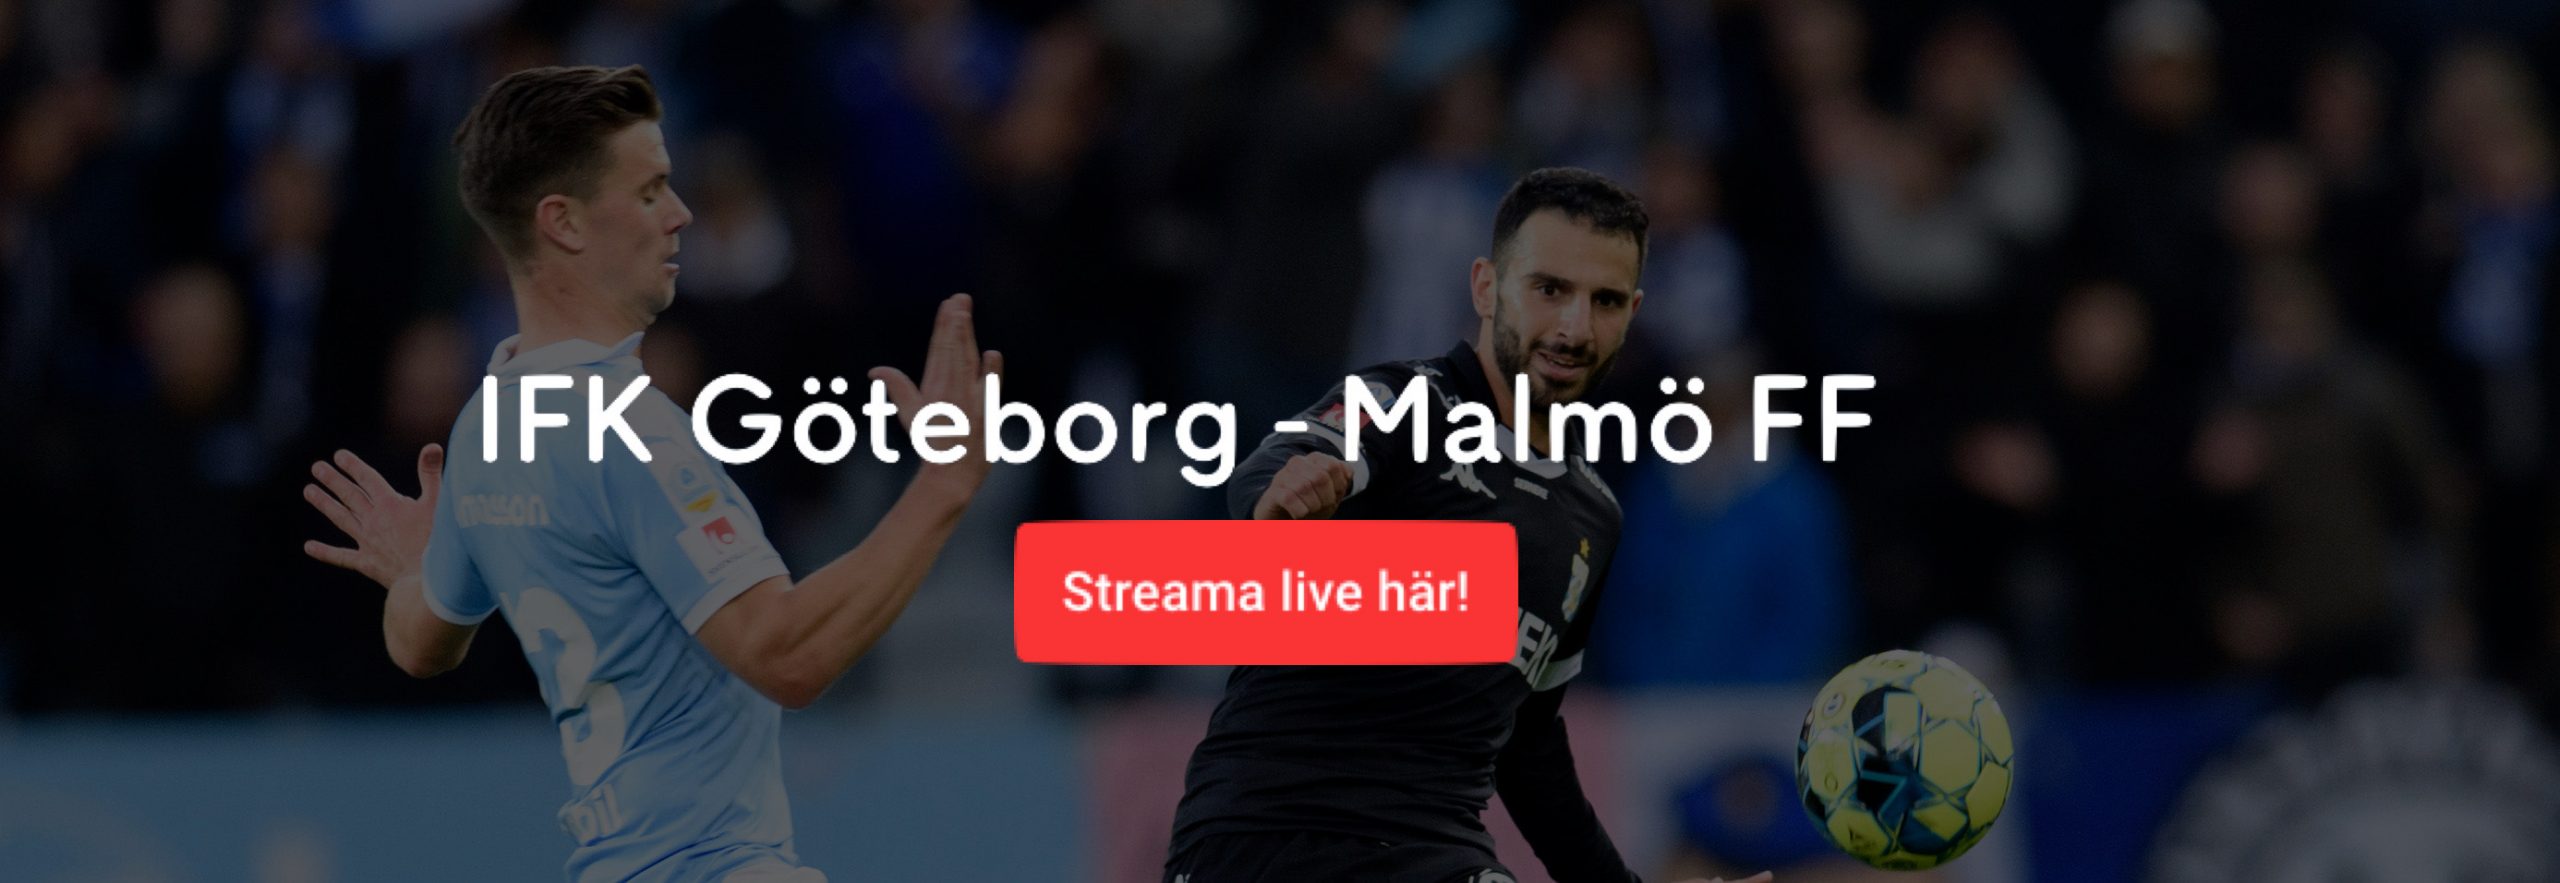 IFK Göteborg Malmö FF TV tider? Vilken tid spelas MFF IFK idag/ikväll?